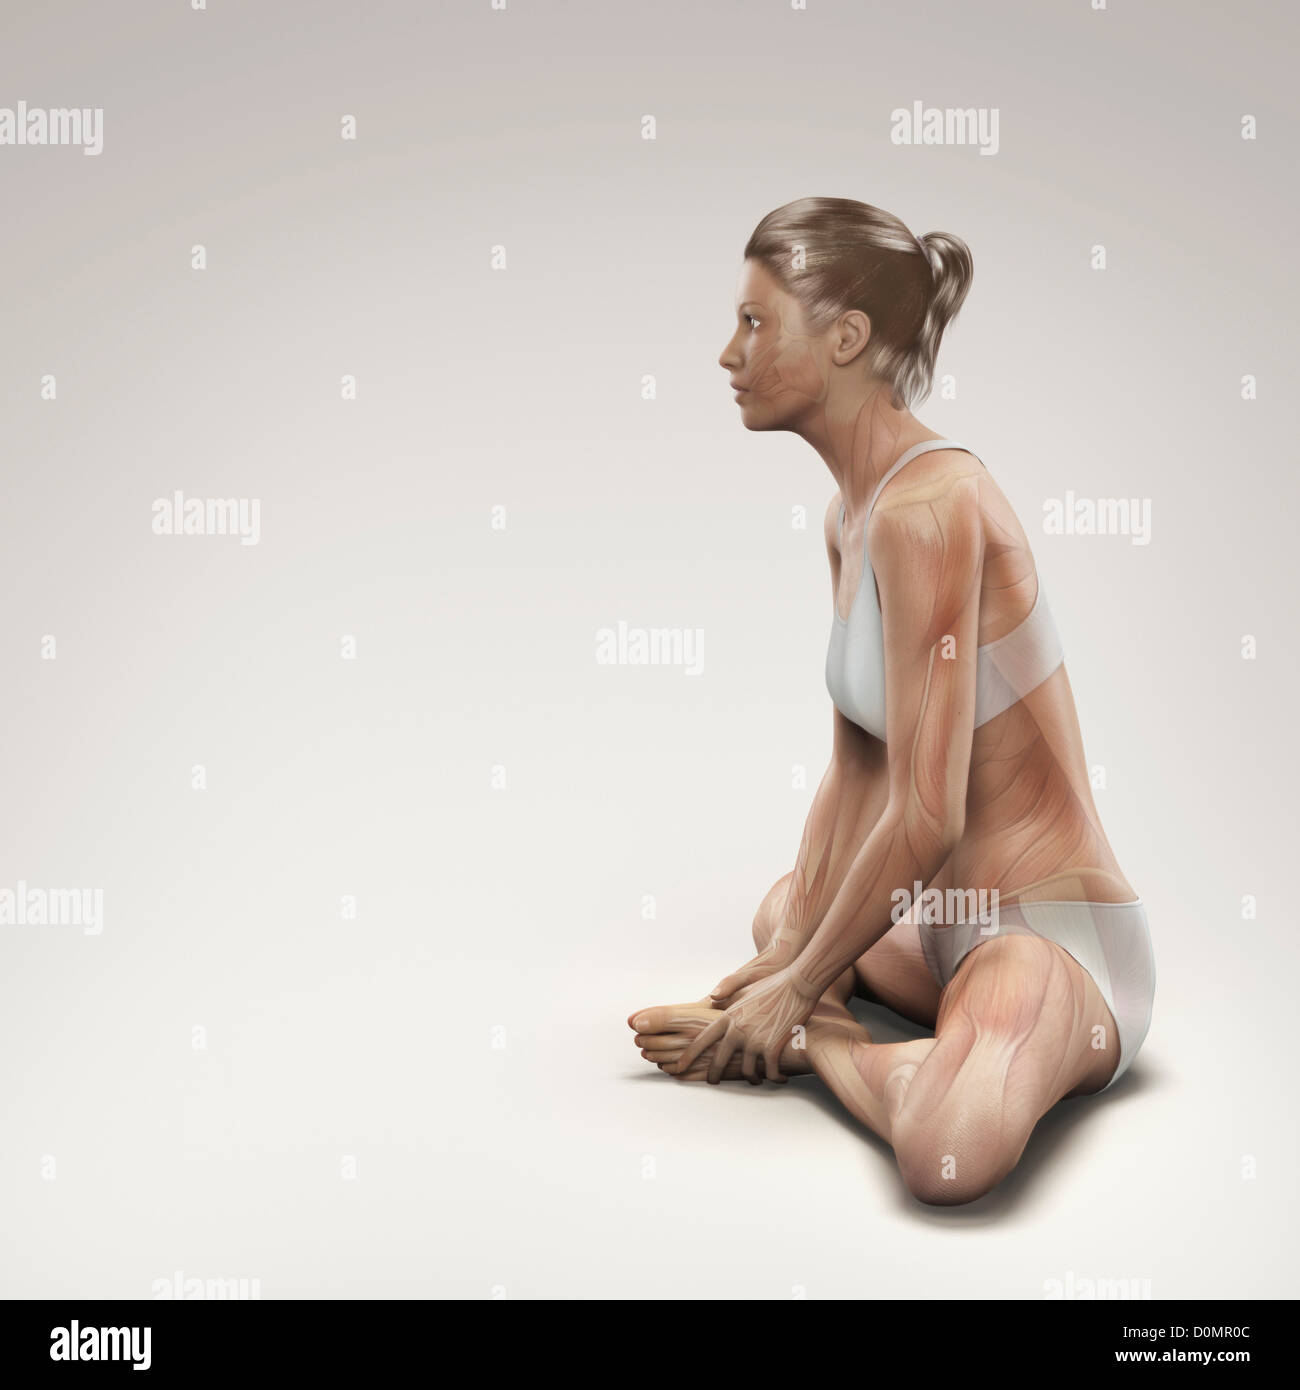 Muskulatur über Frauenkörper in gebundenen Winkel-Pose, die Aktivität bestimmter Muskelgruppen in dieser bestimmten Yoga-Haltung zeigen geschichtet. Stockfoto